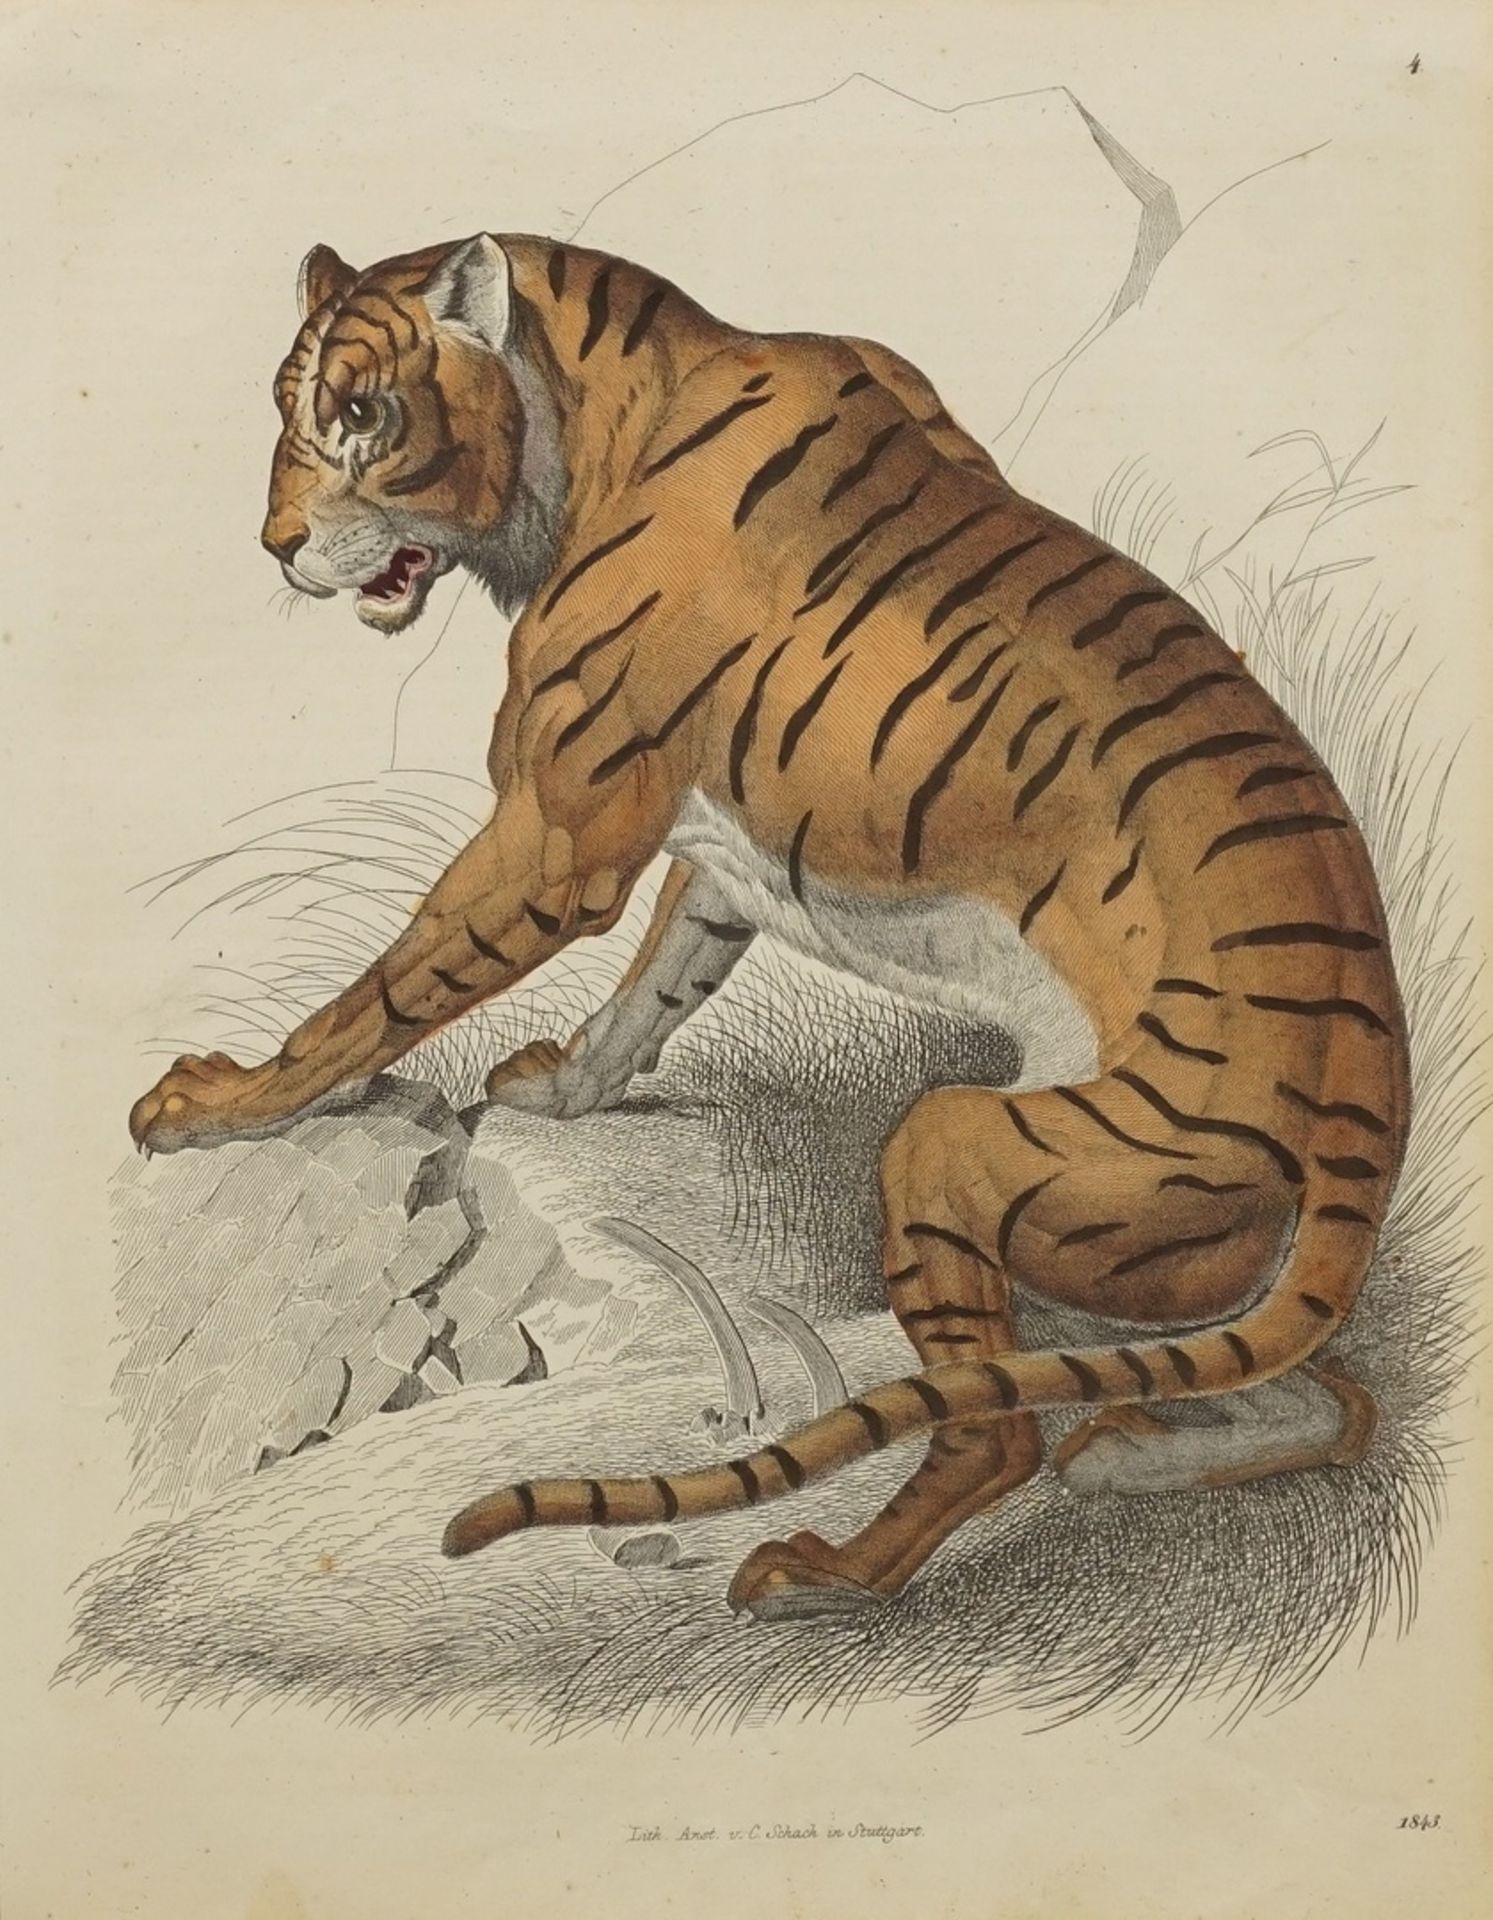 Unbekannter Künstler, "Sitzender Tiger"altkolorierte Lithografie/Papier, datiert 1843, herausgegeben